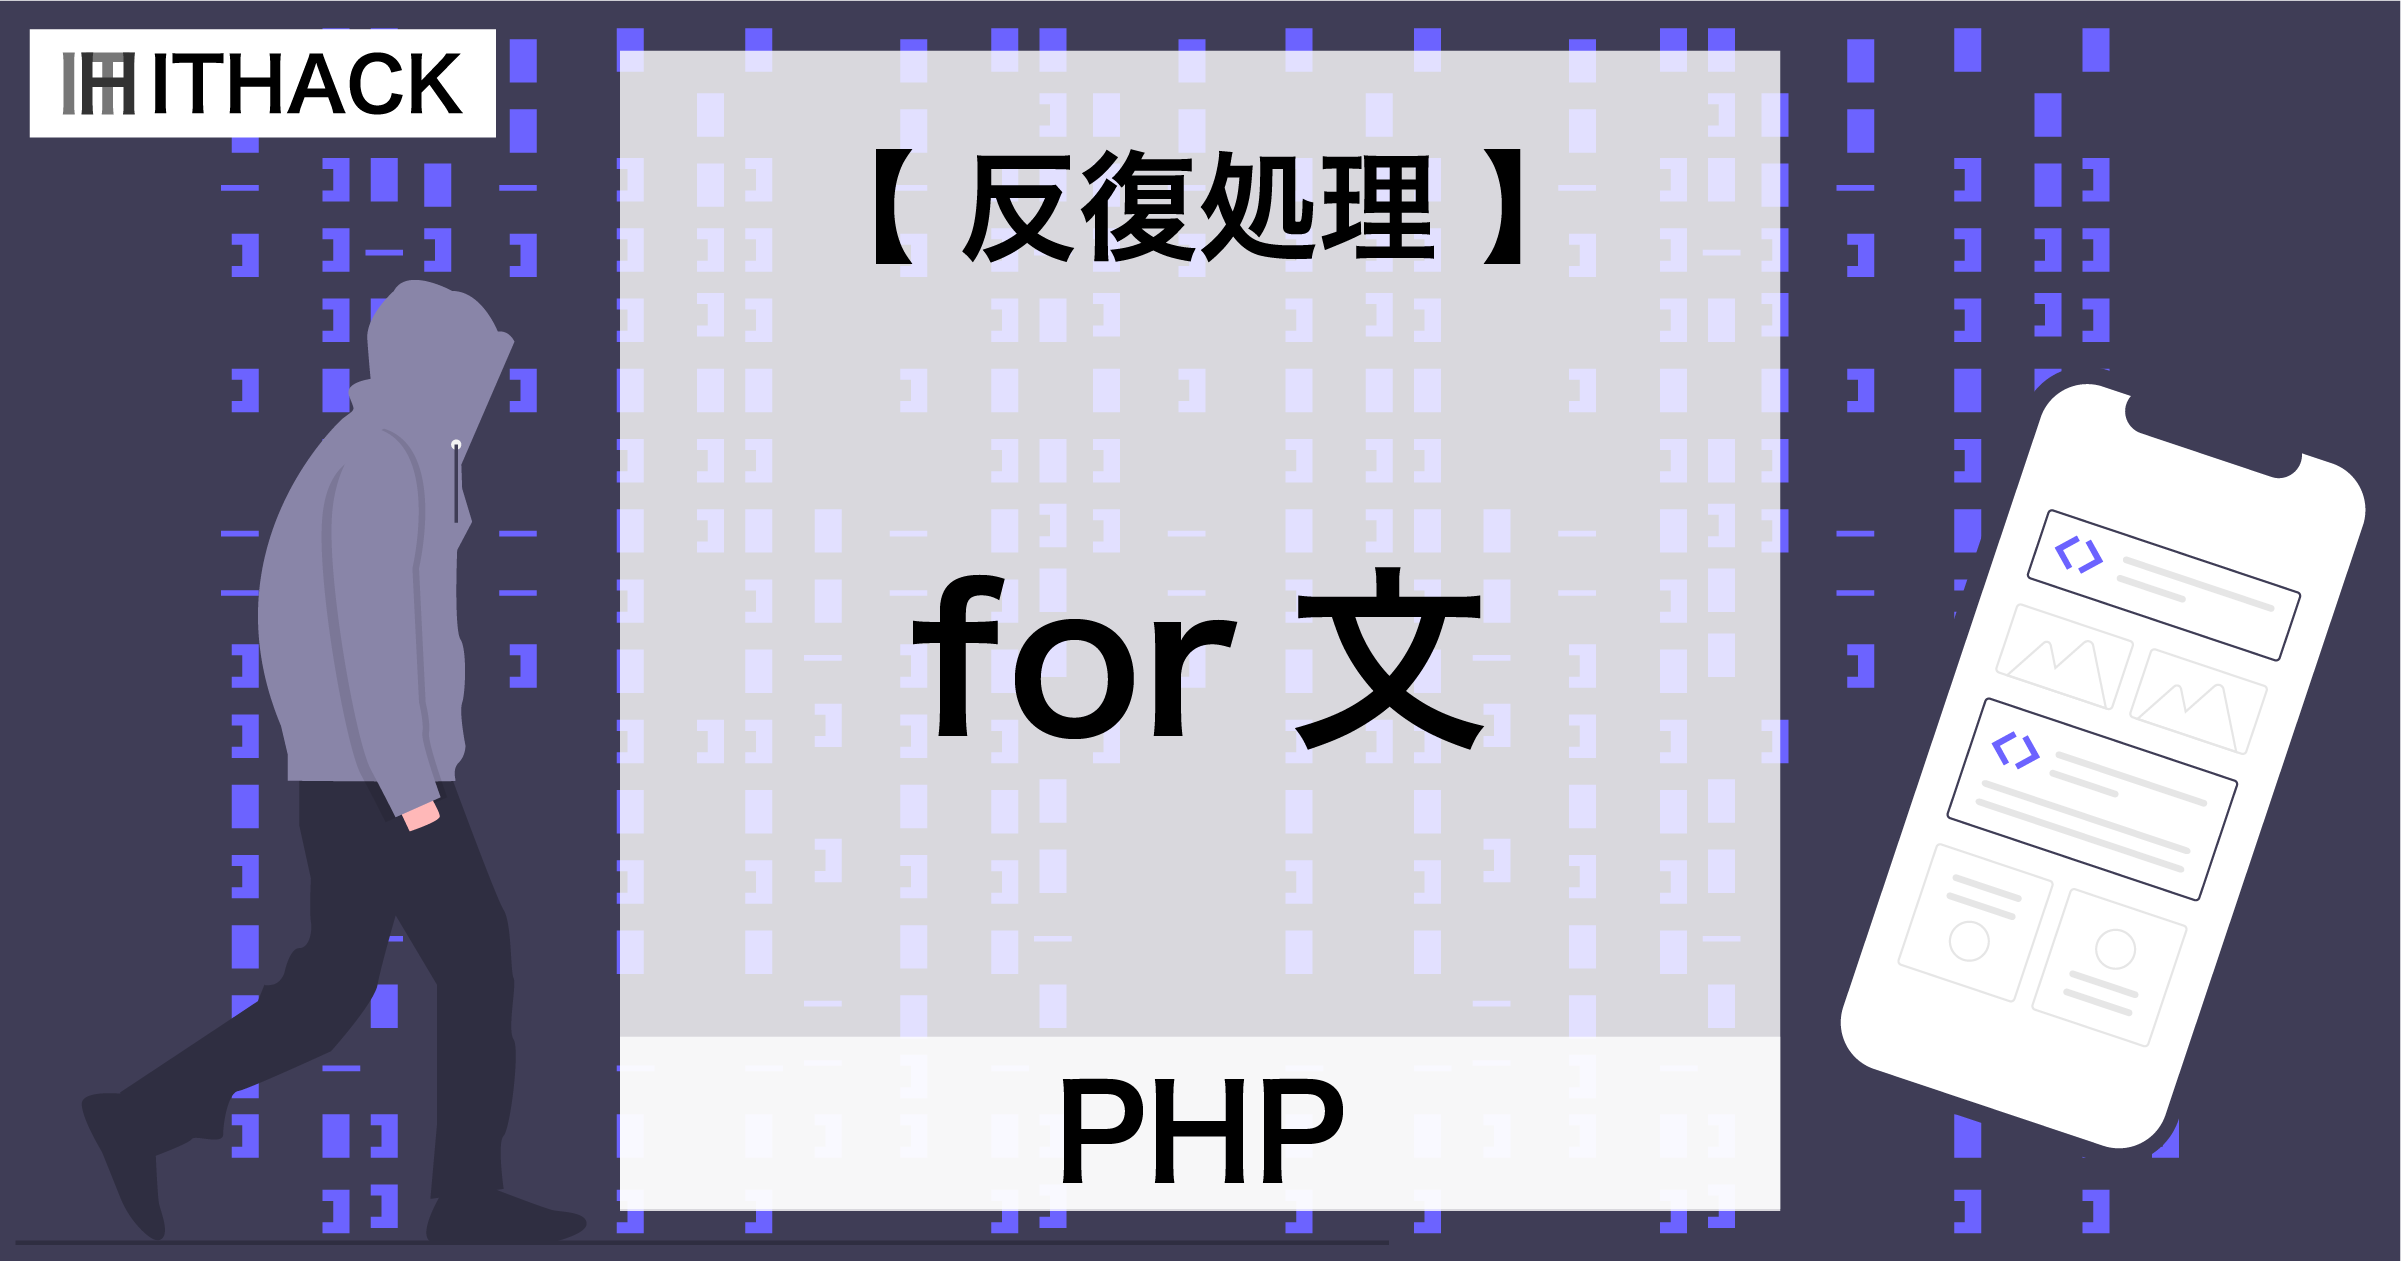 【PHP】for文 - 反復処理 / 同じ処理を繰り返す処理